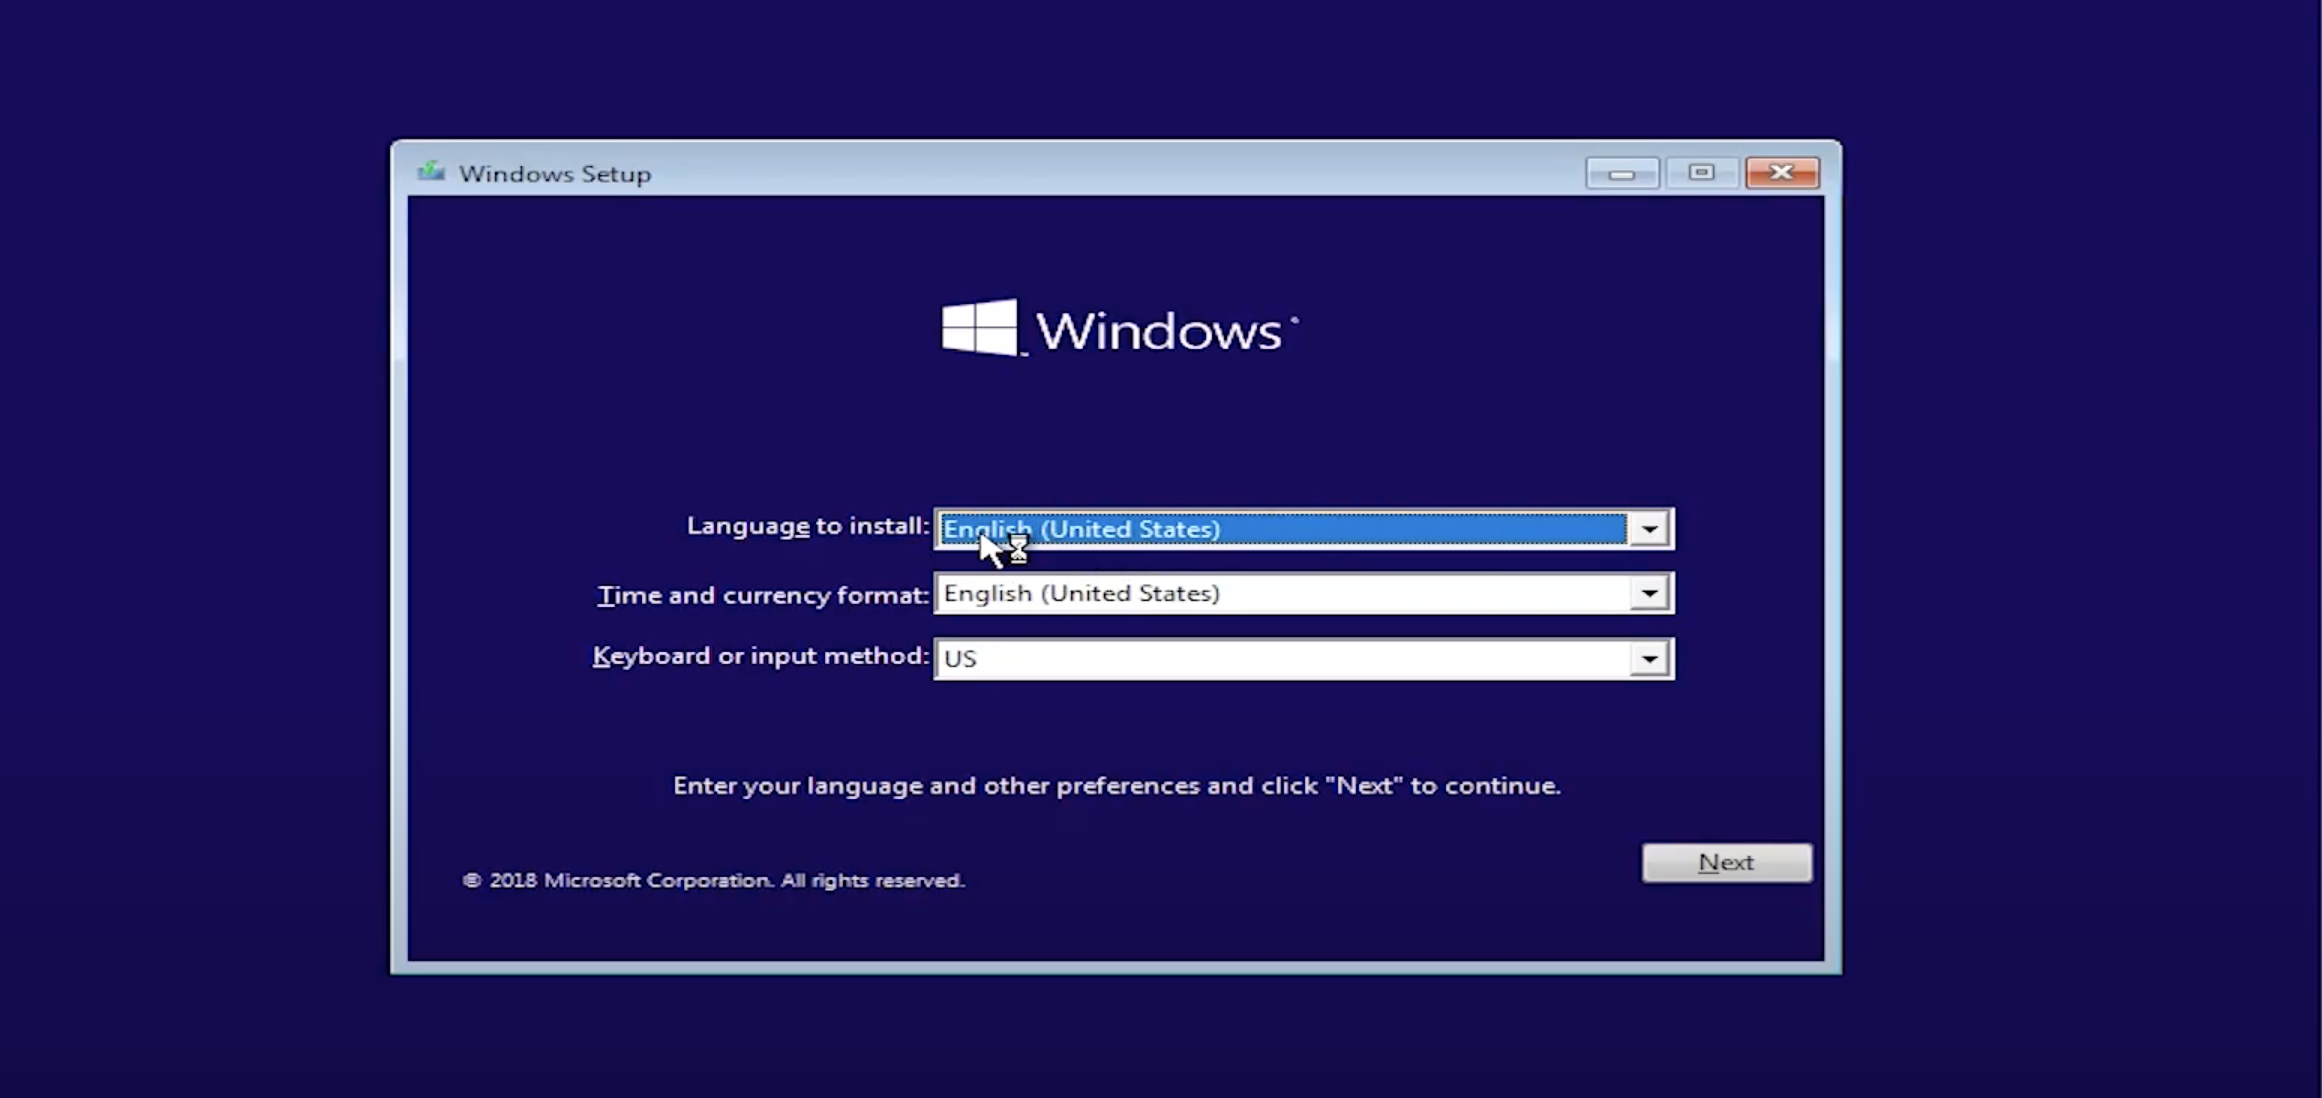 Hướng dẫn cài đặt Windows 10 Enterprise LTSC